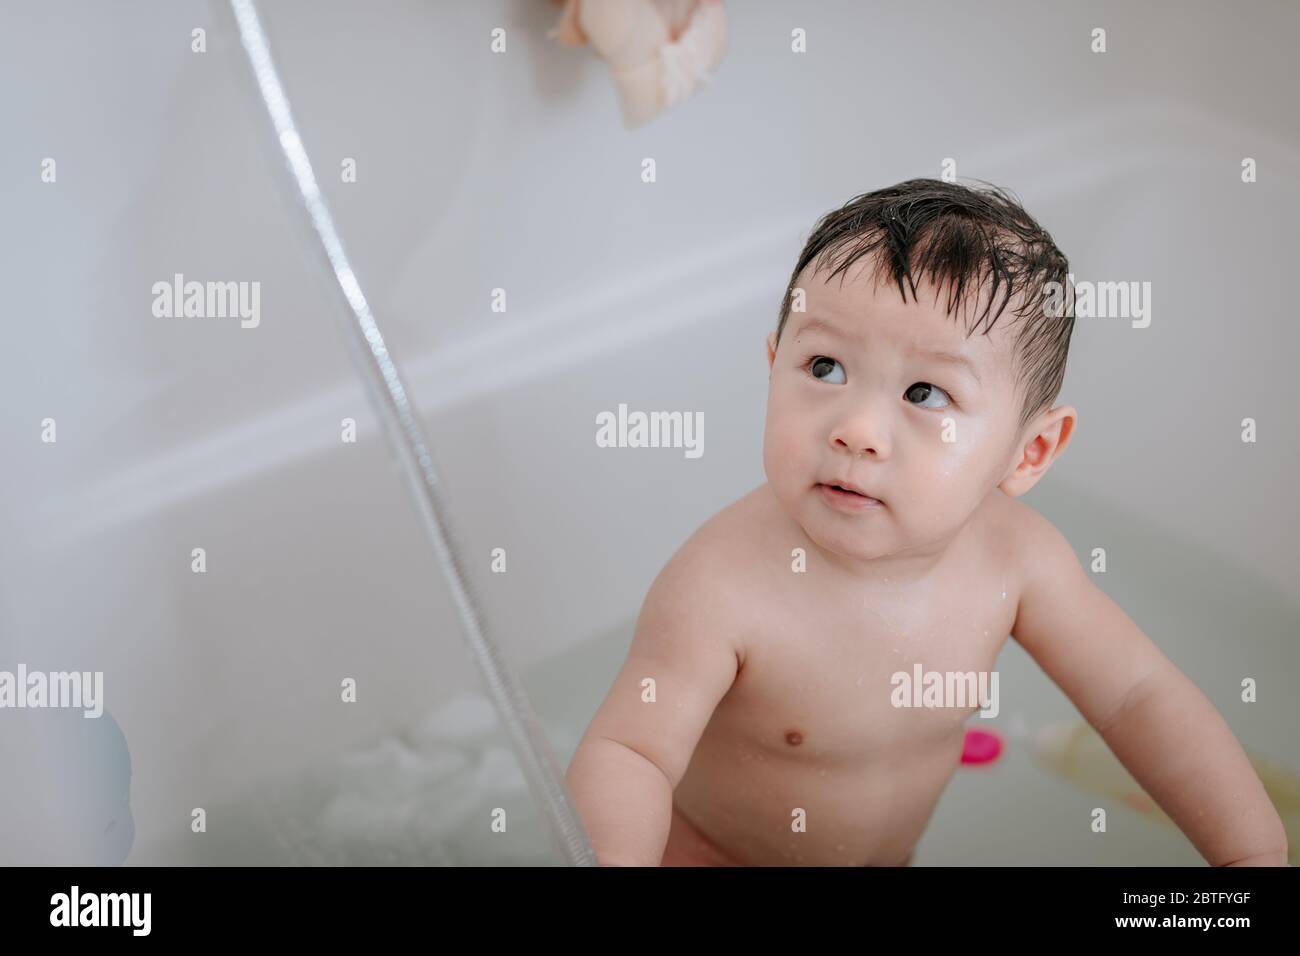 Petit garçon, jouant dans la baignoire à la maison Banque D'Images